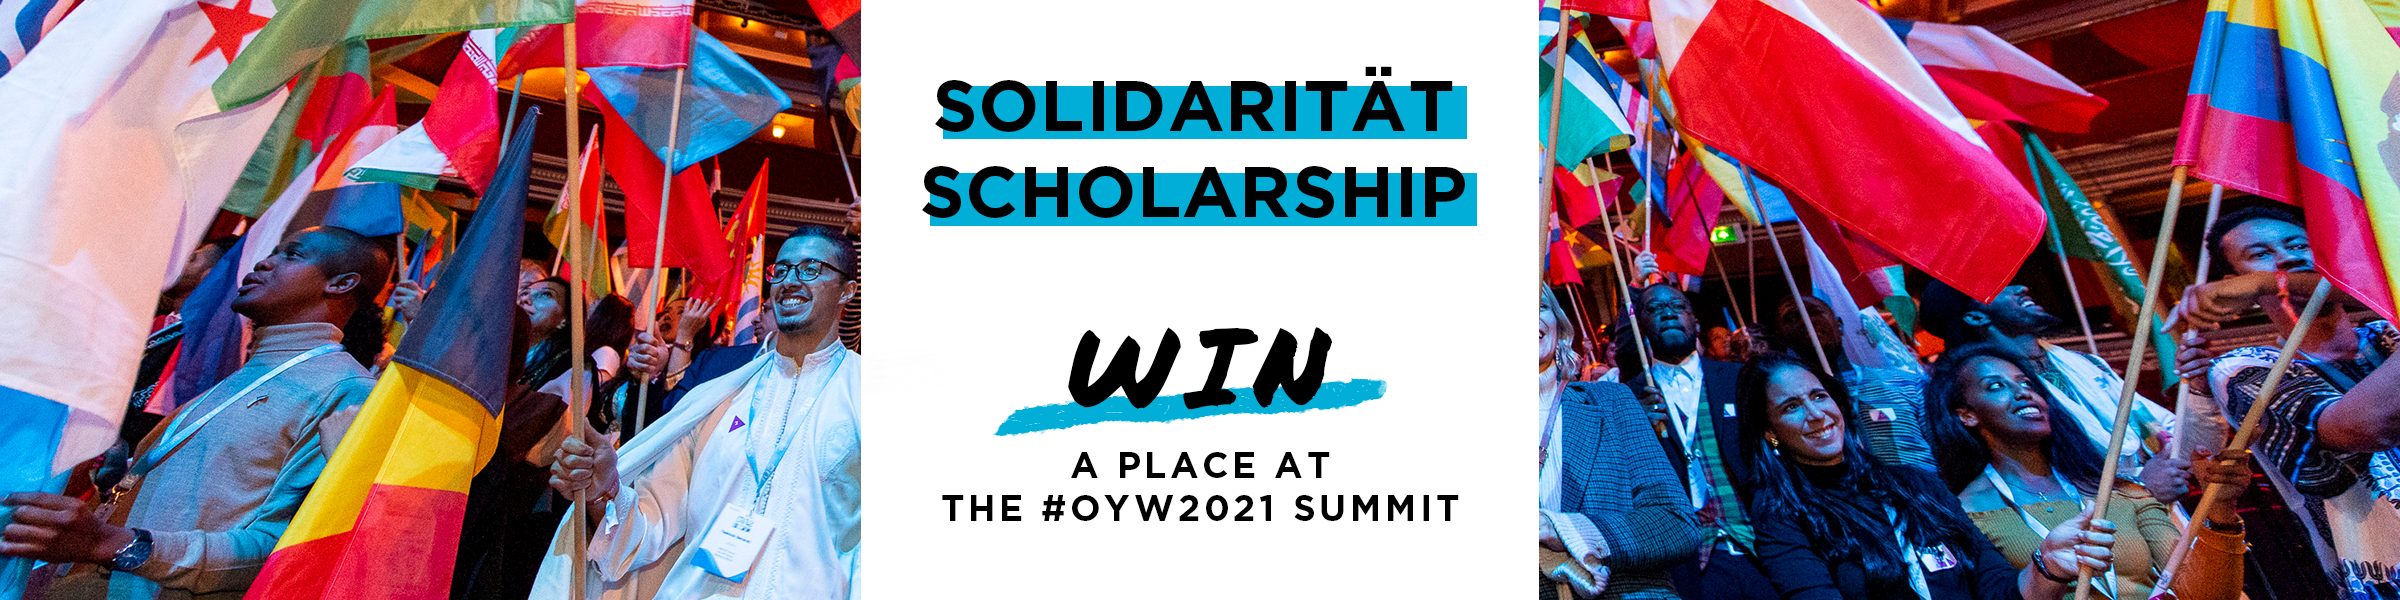 solidaritat-banner